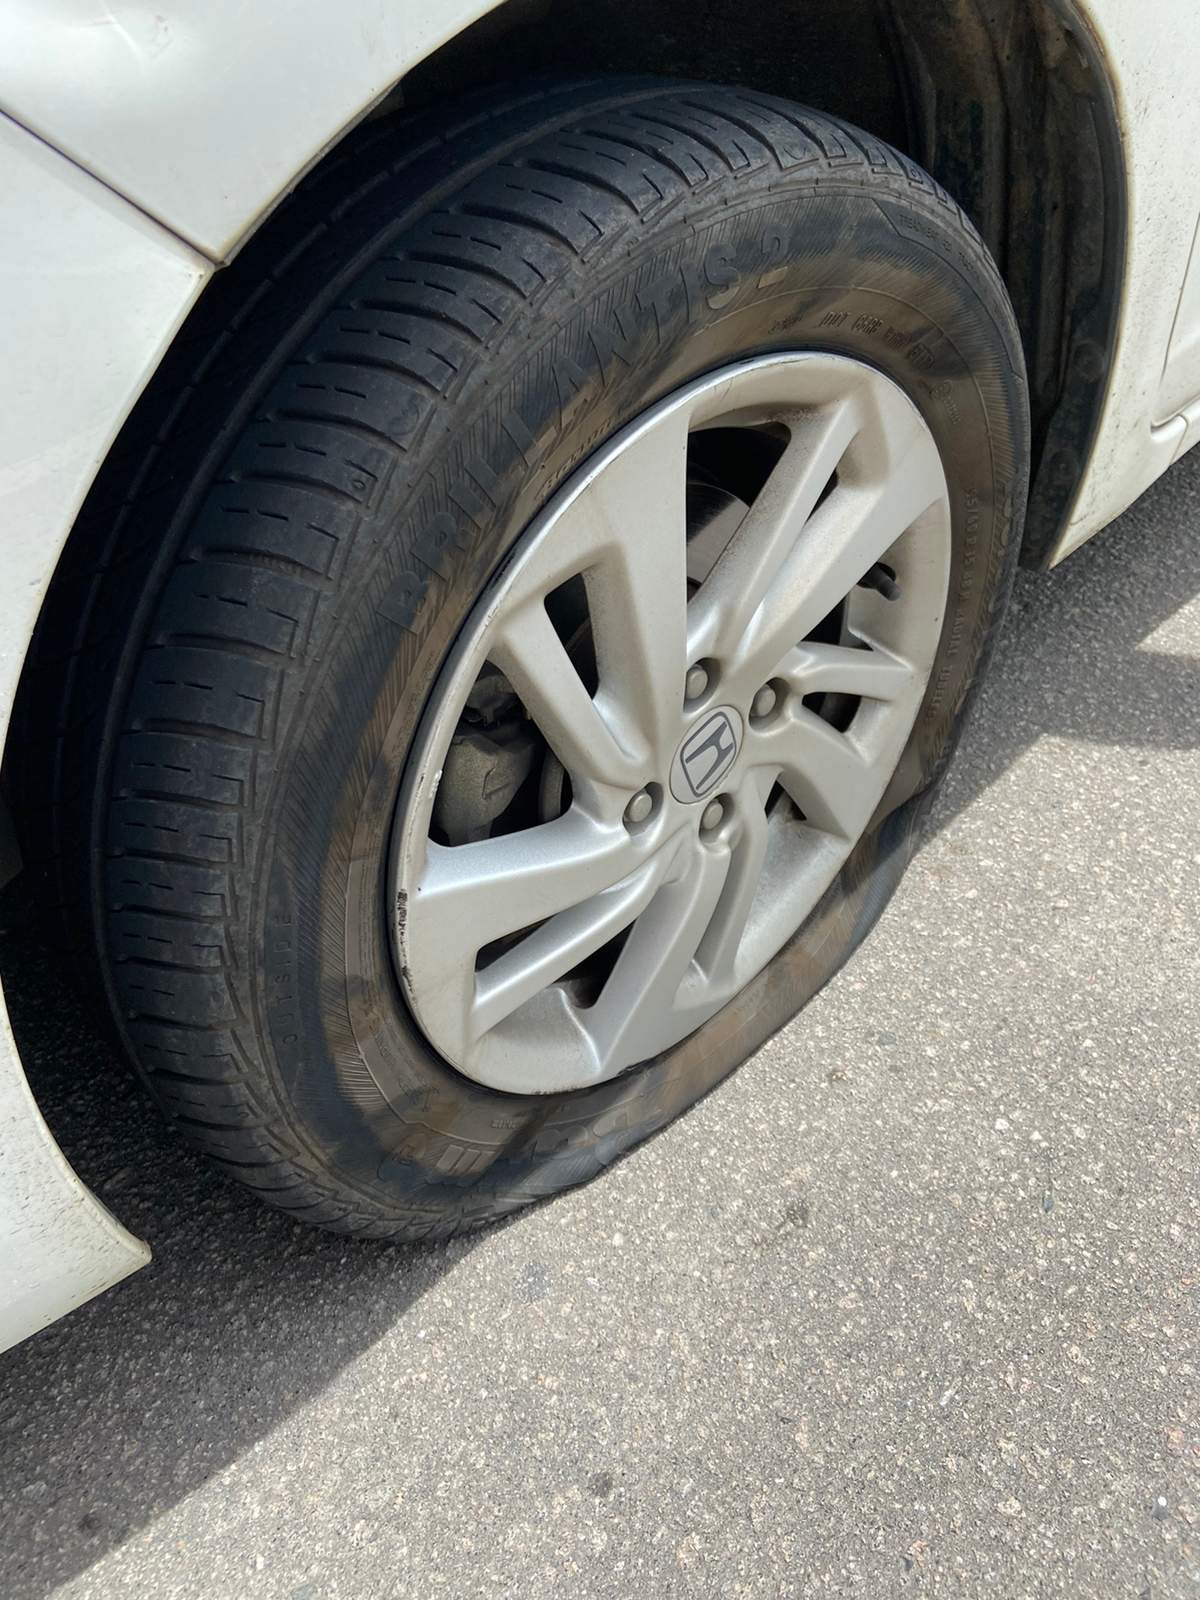 Motoristas têm prejuízo com pneus furados em buracos nas vias da